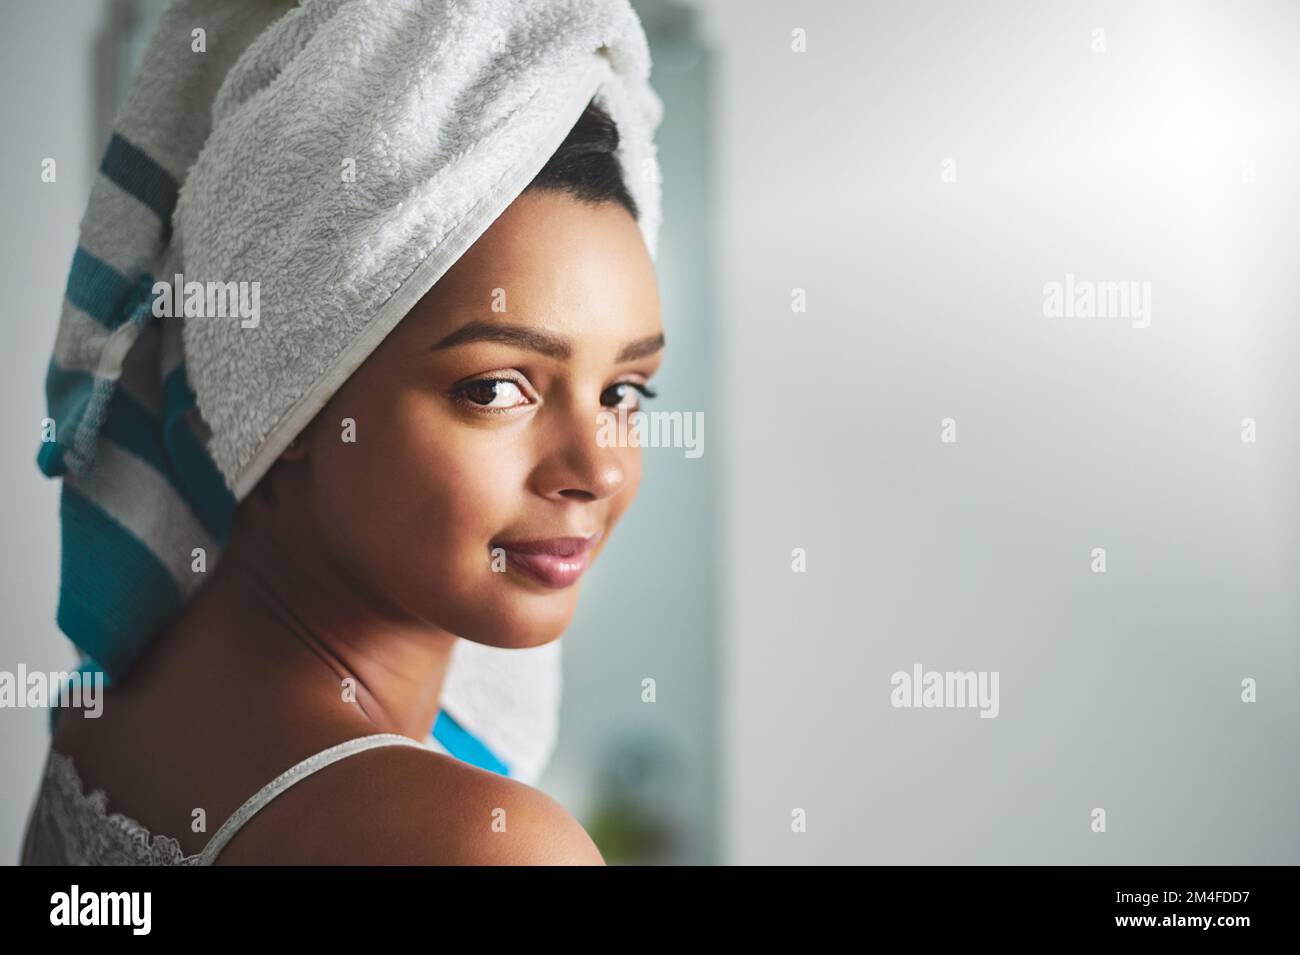 La bellezza naturale è il migliore tipo di bellezza. Ritratto di una giovane donna attraente in piedi nel bagno a casa. Foto Stock